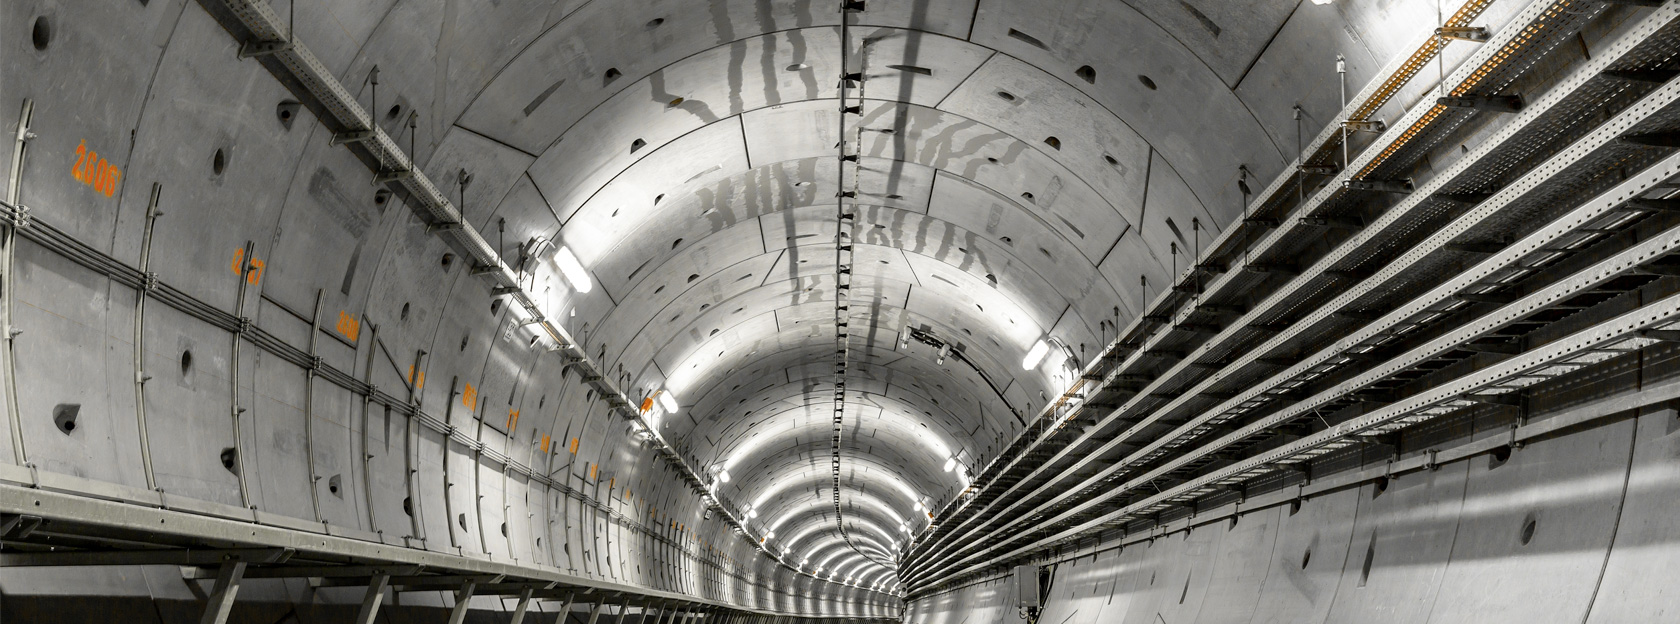 Soluciones personalizadas en maquinaria para la construcción de túneles con hormigón.